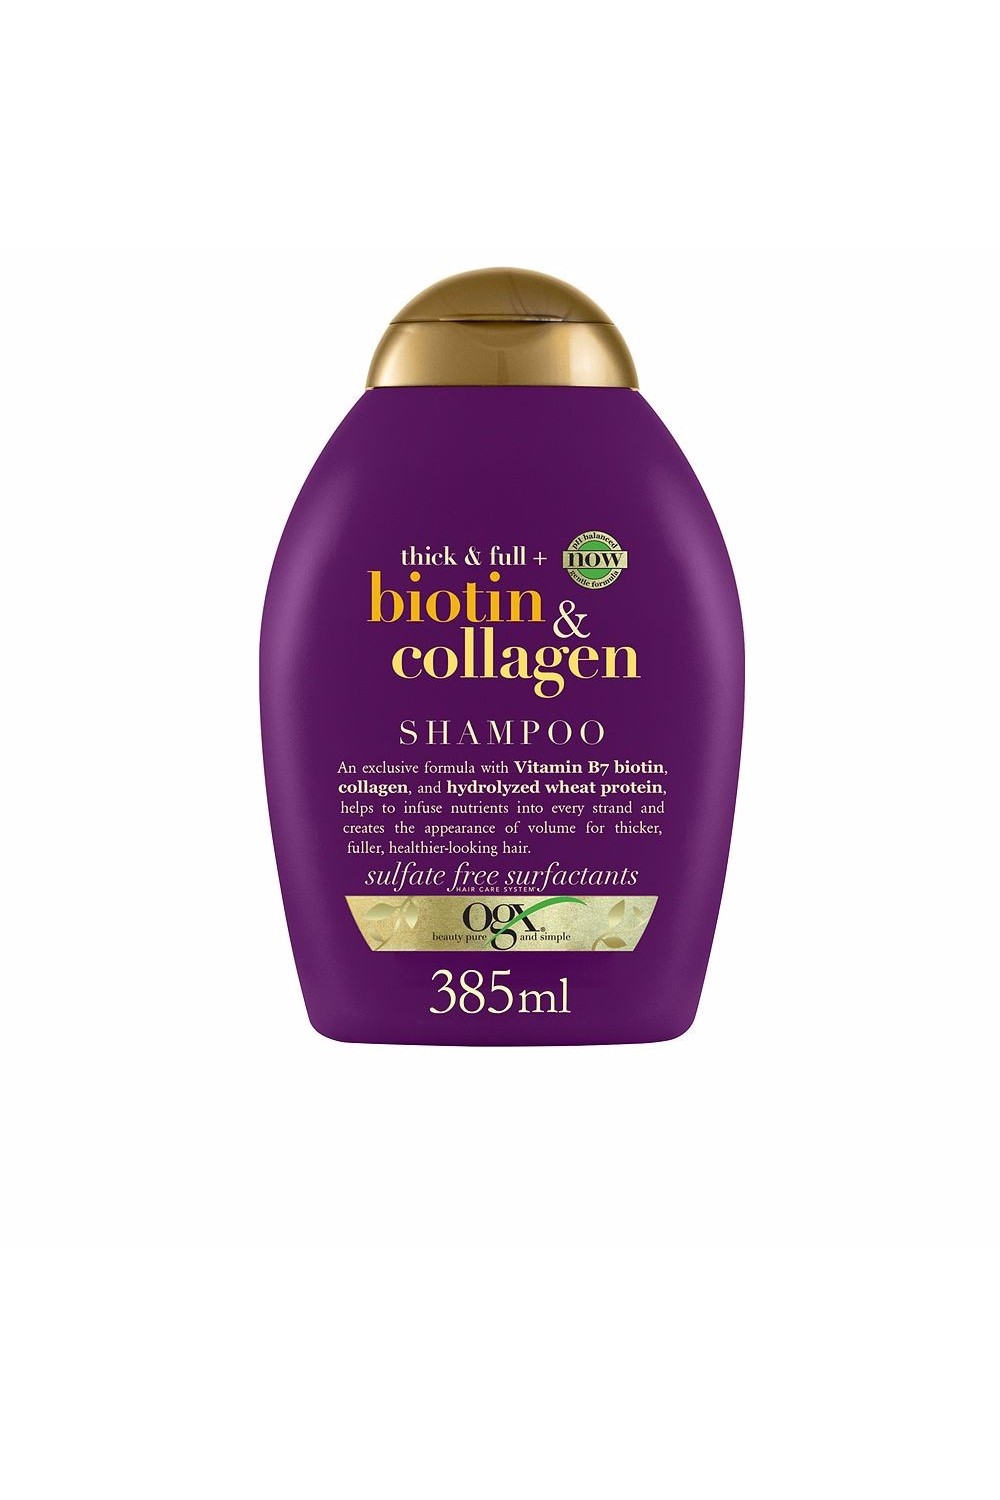 Ogx Biotin y Collagen Hair Shampoo 385ml